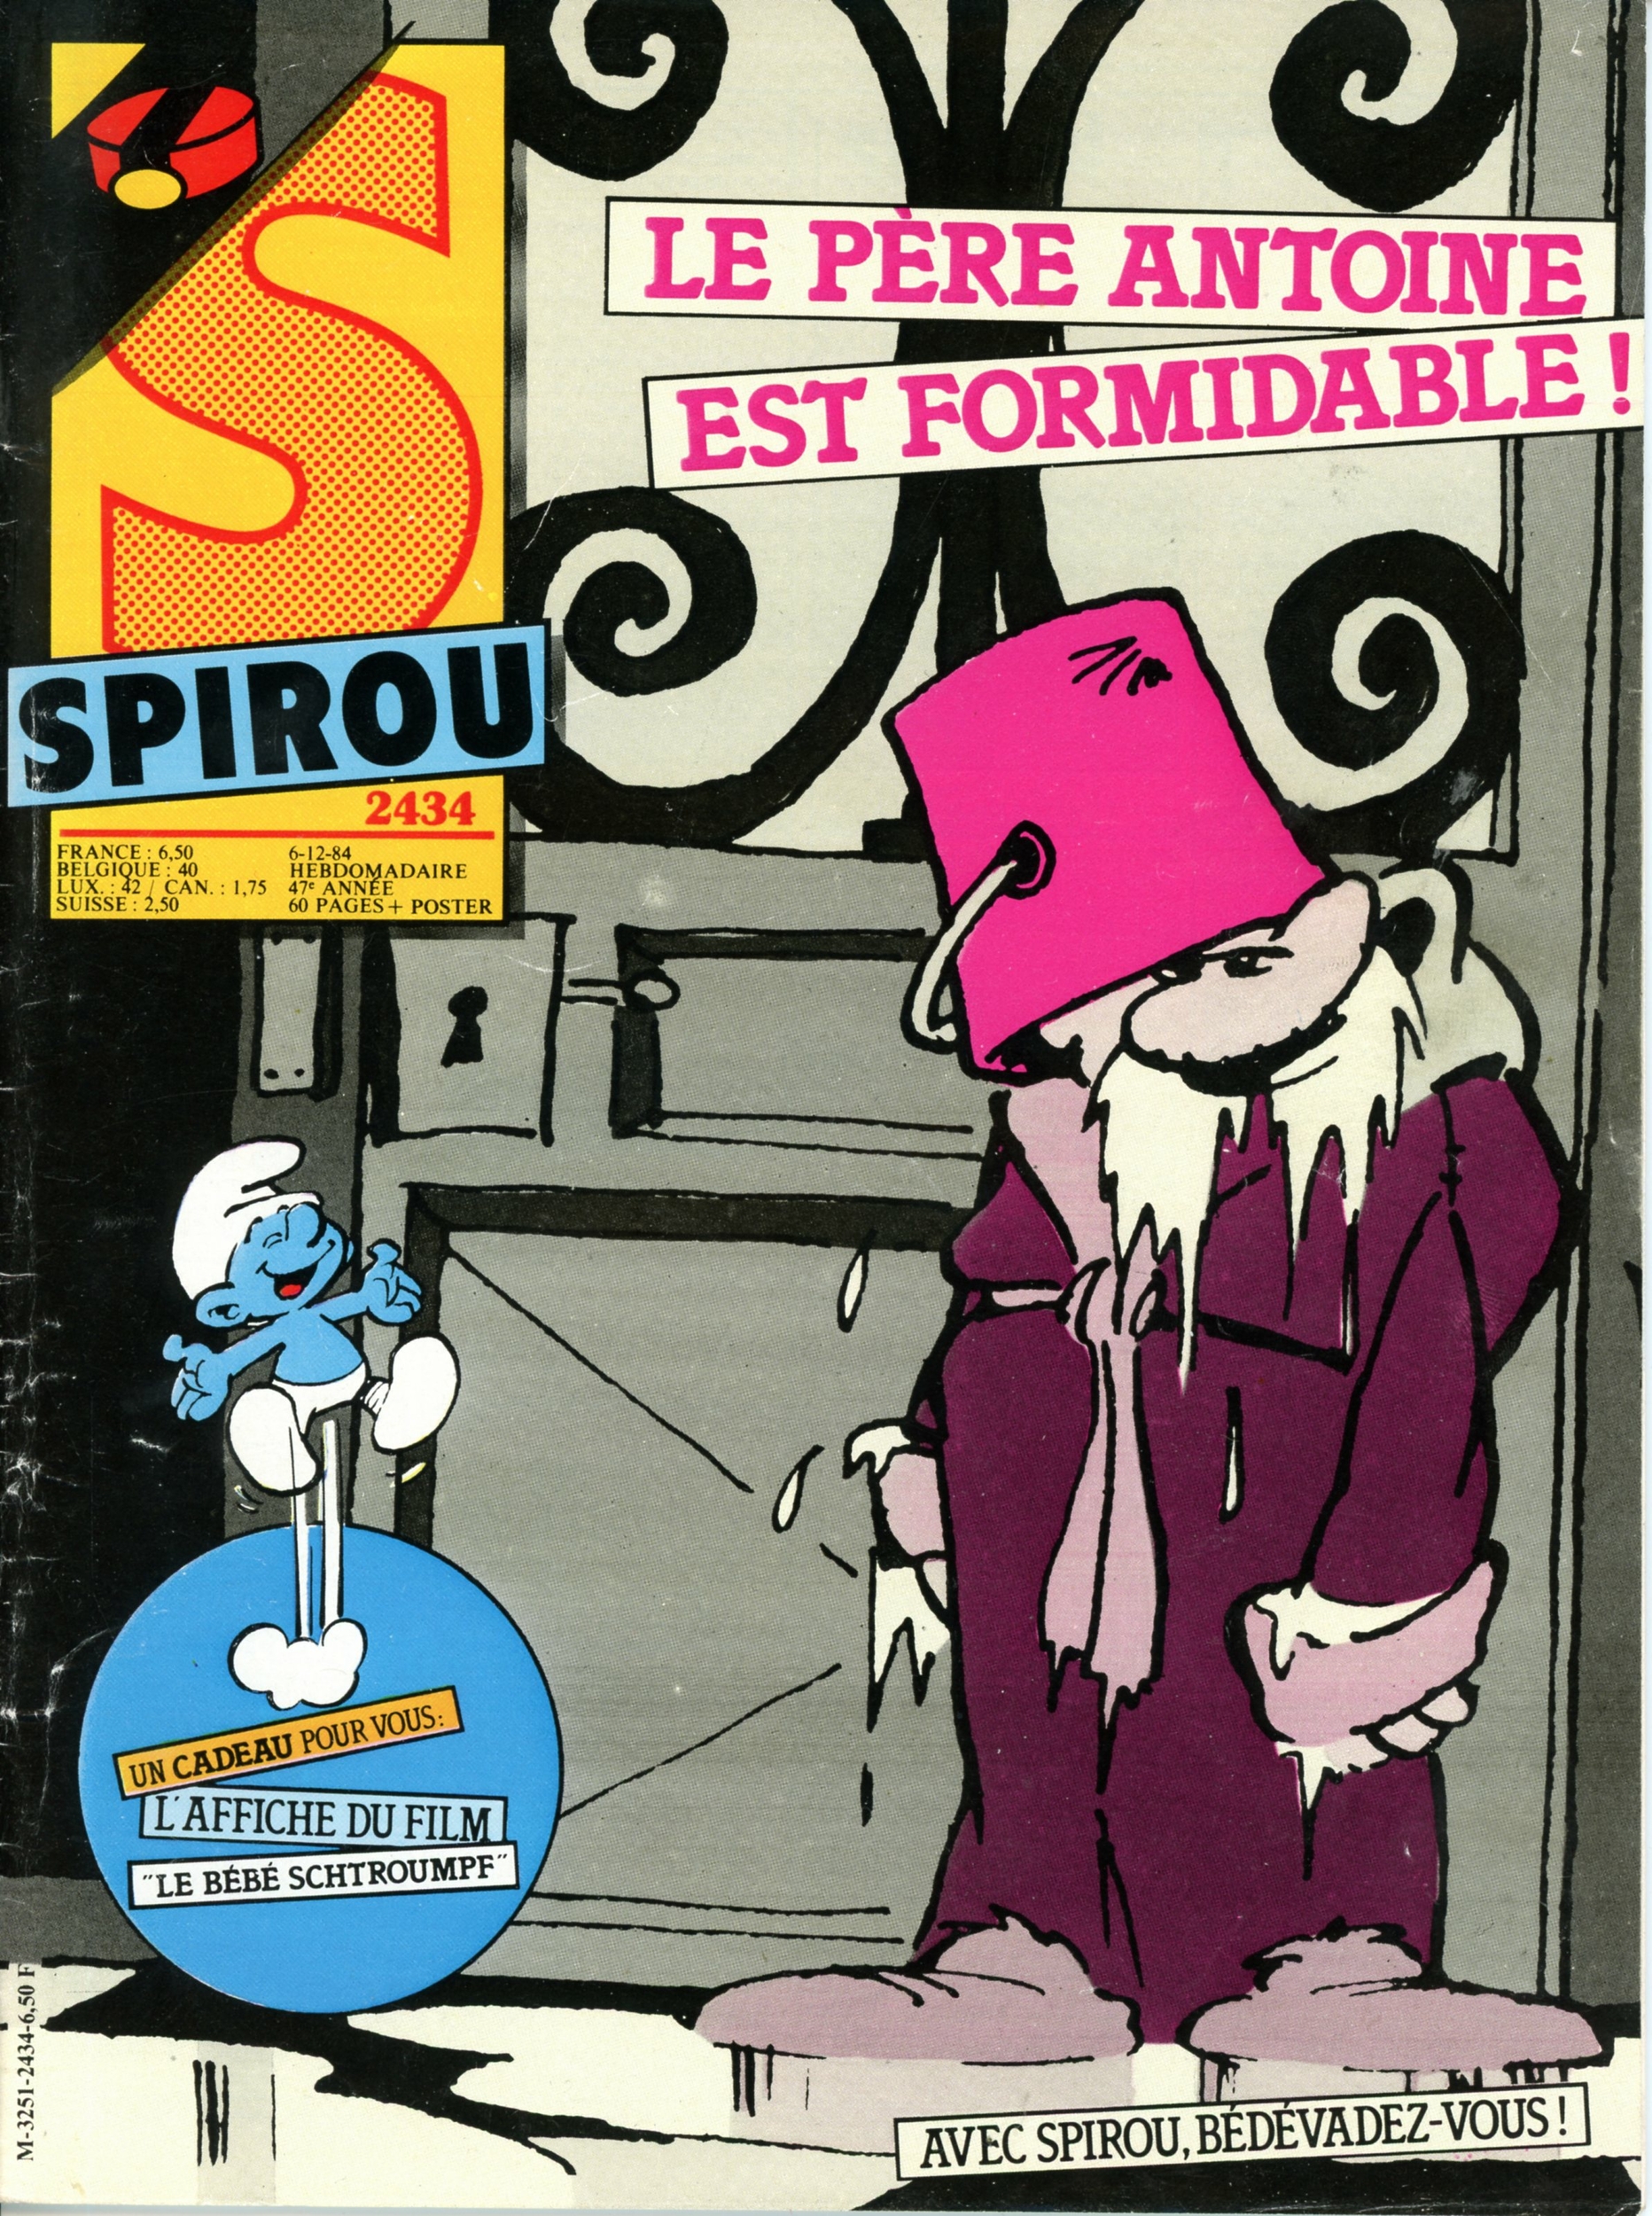 JOURNAL-SPIROU-2434-1984-POSTER-SCHTROUMPF-LEMASTERBROCKERS